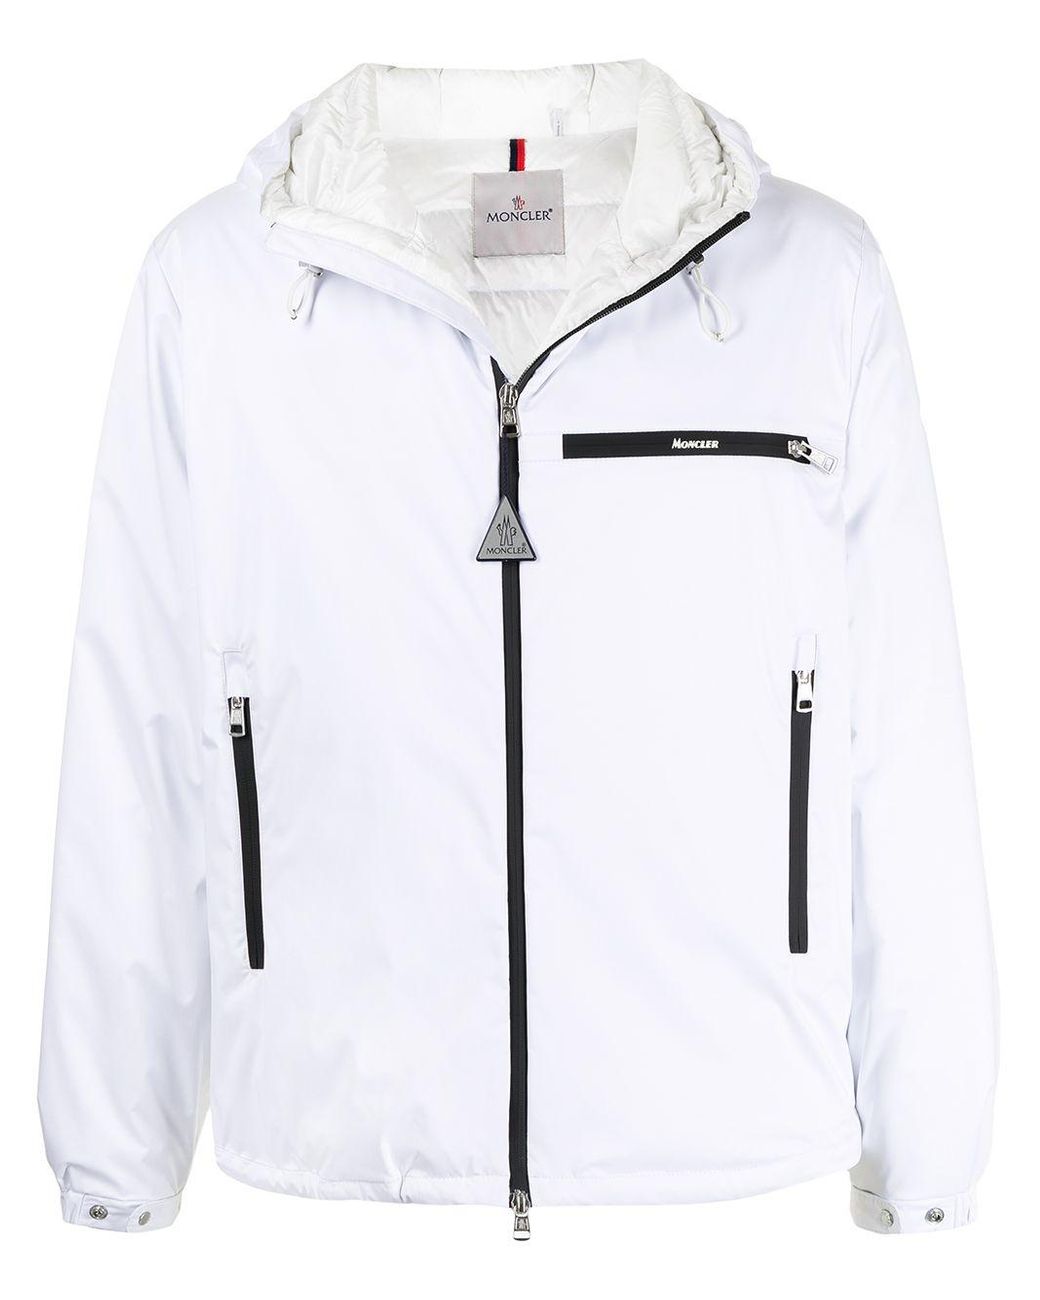 Moncler Hooded Padded Jacket in White for Men - Lyst